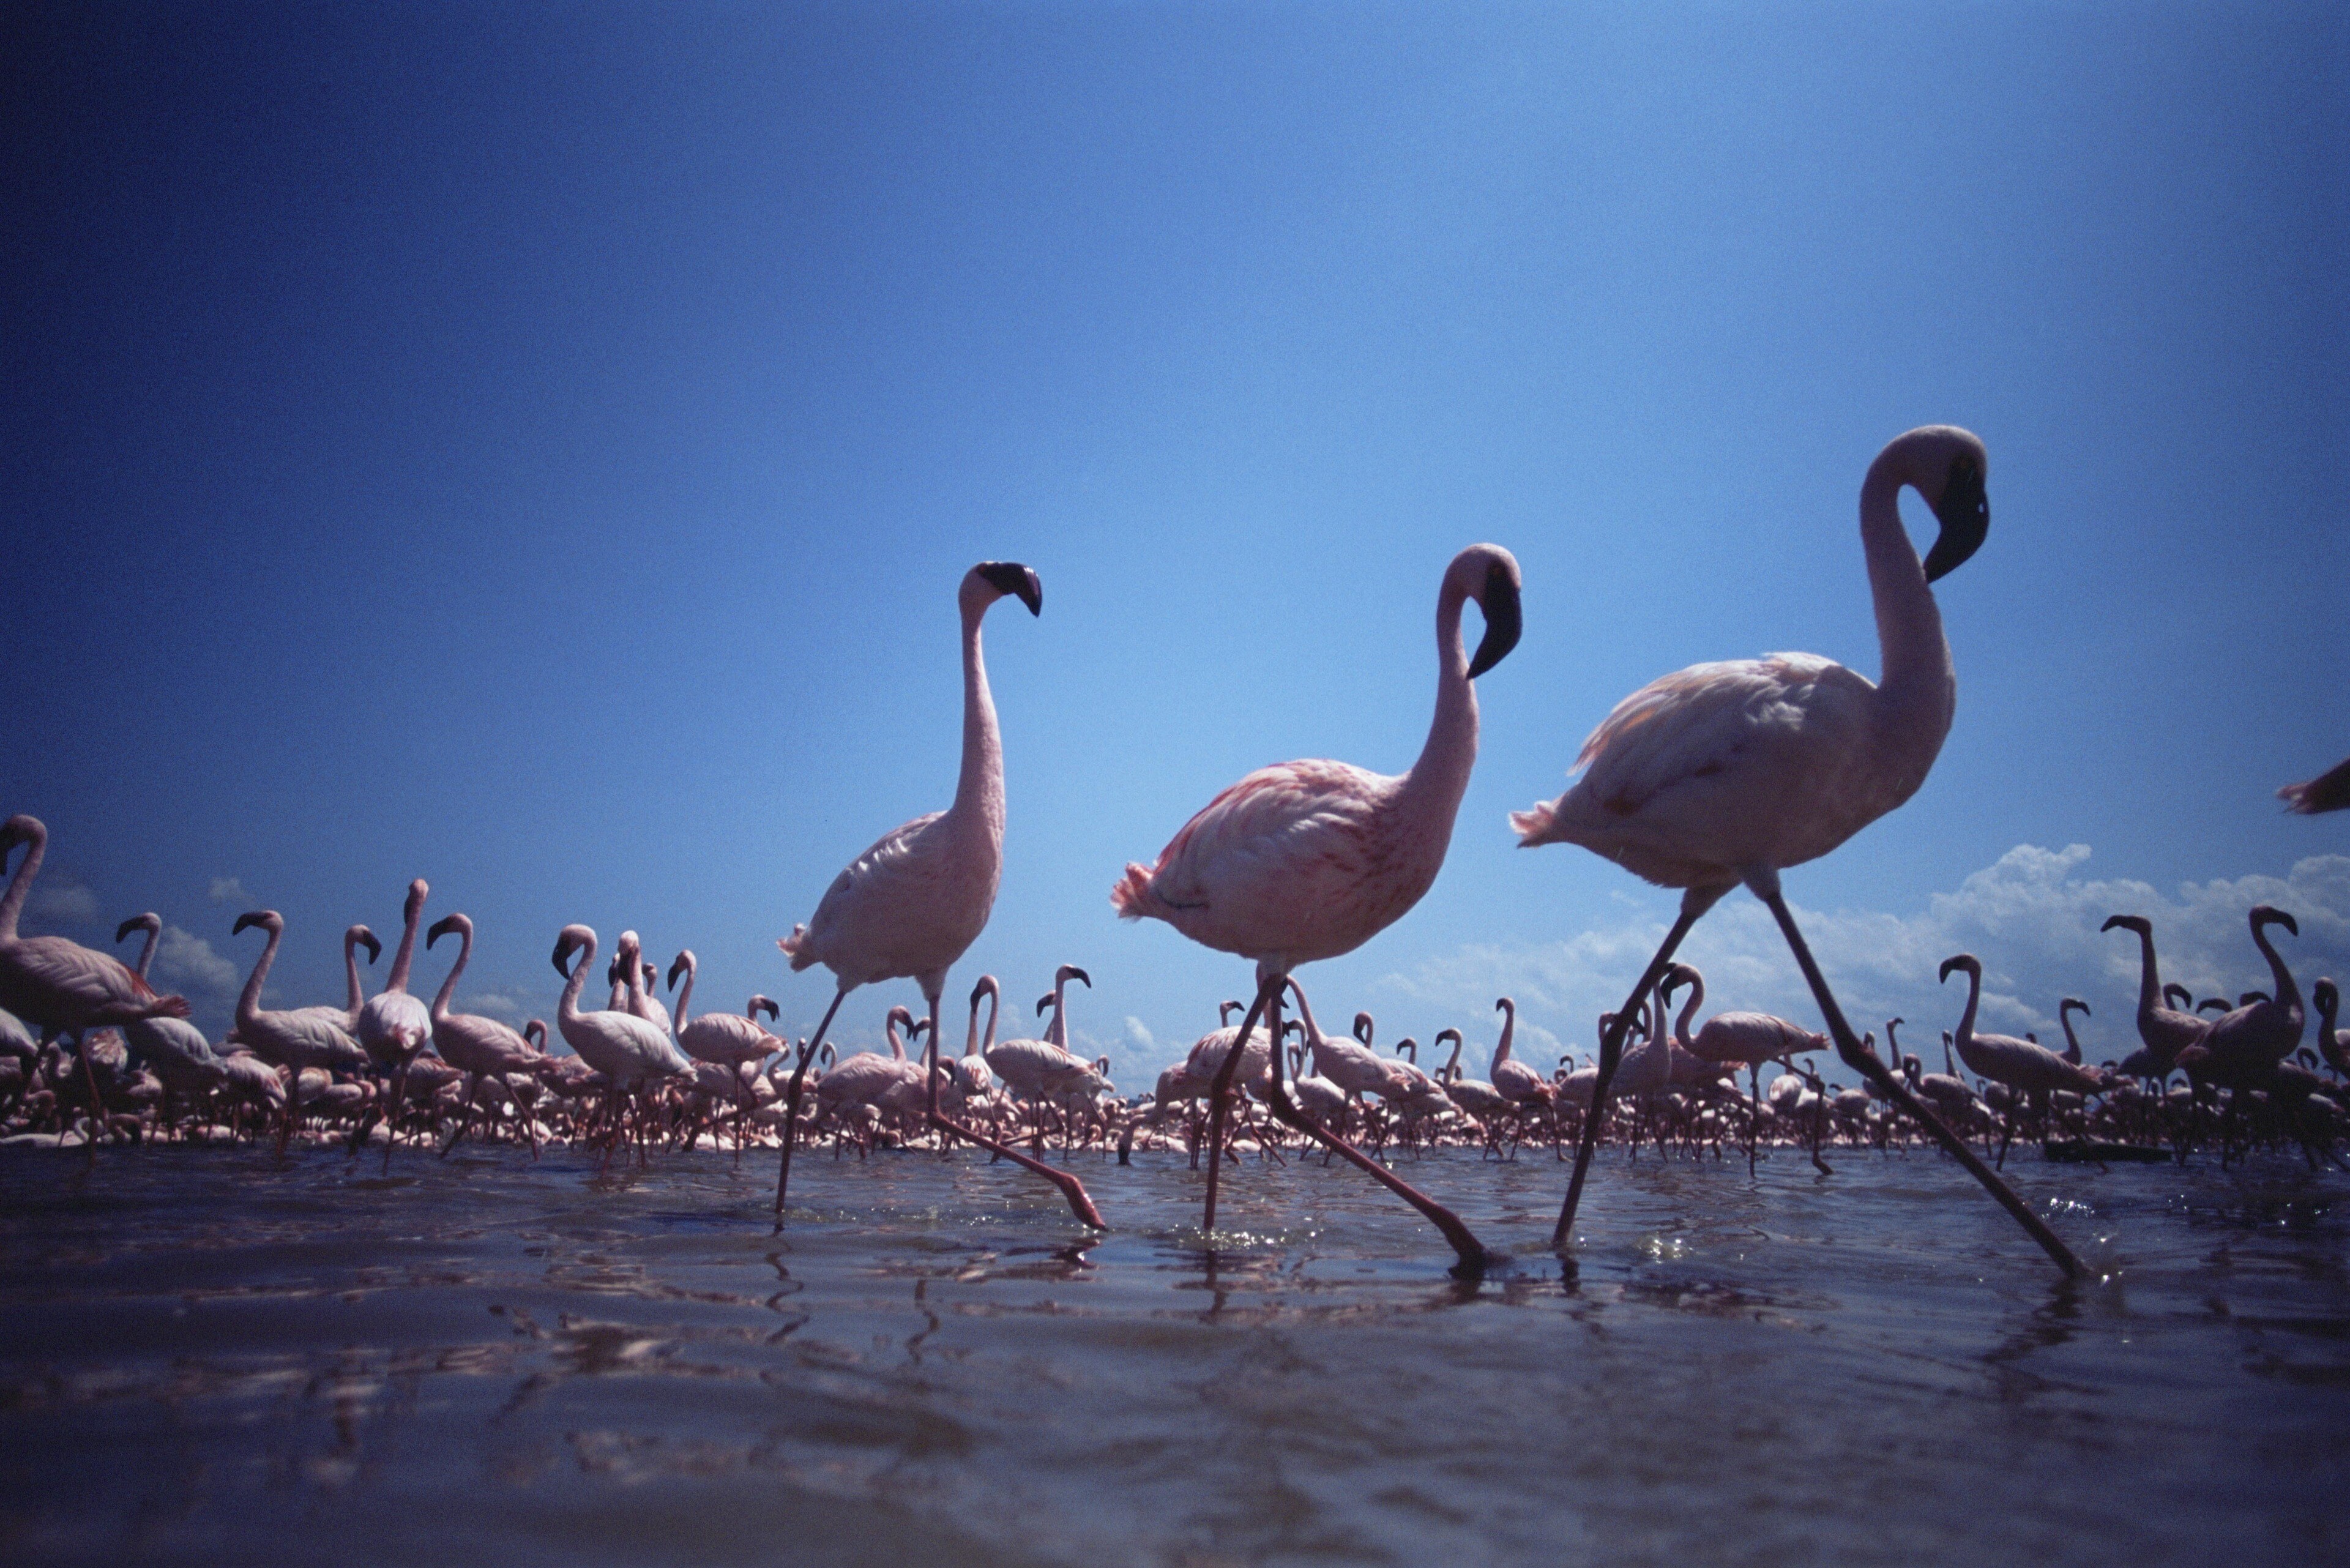 Three flamingos take a synchronized walk through the water.